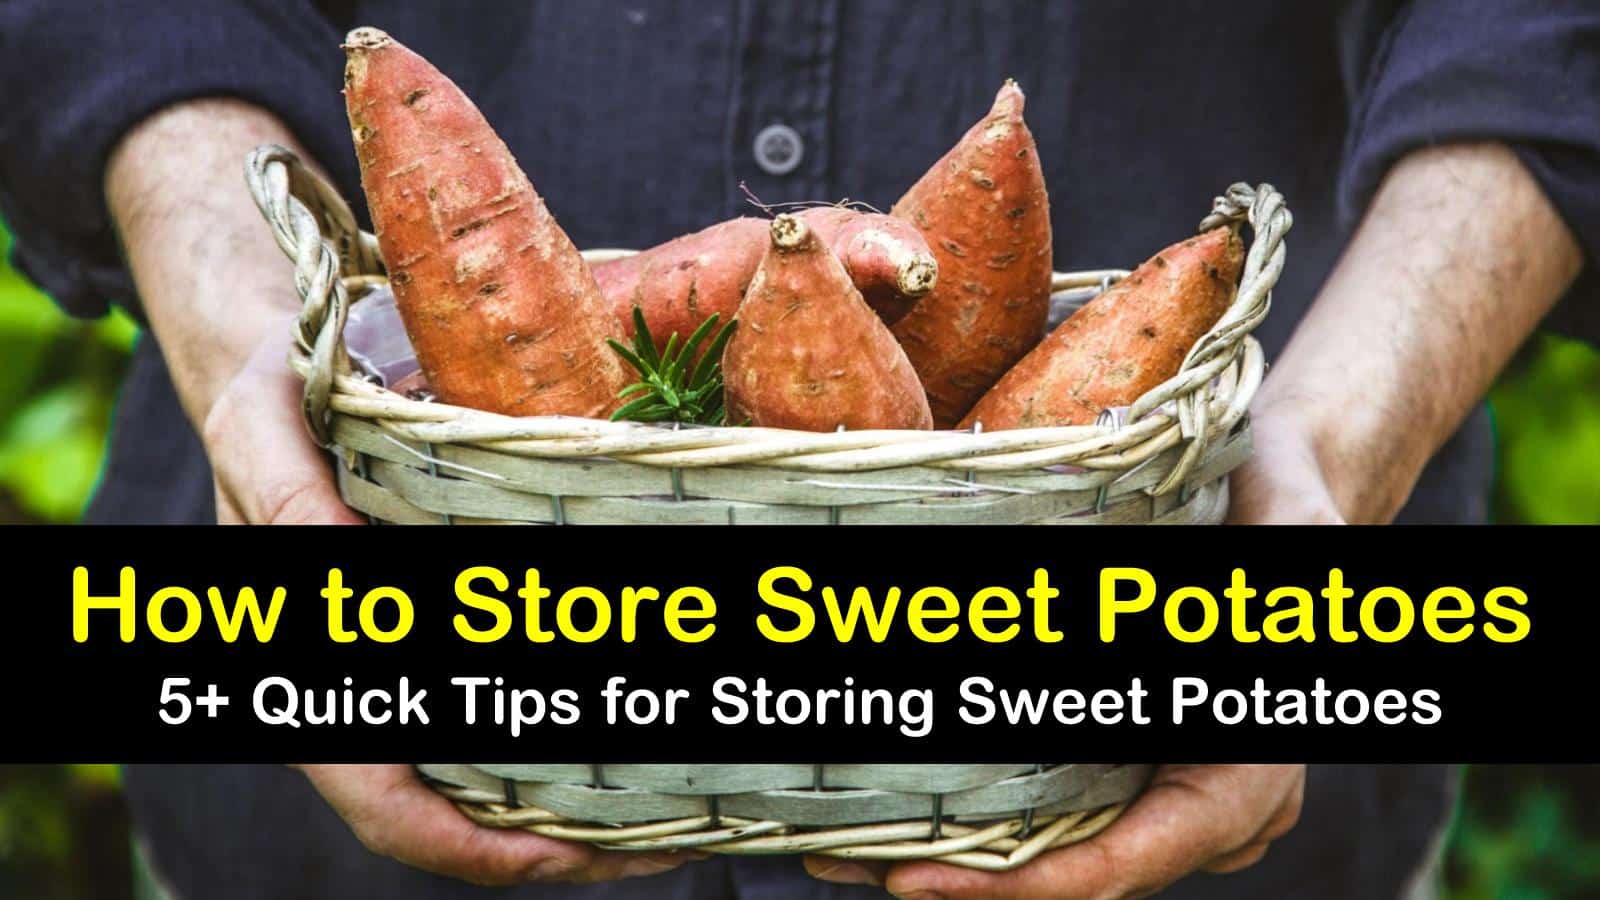 how to store sweet potatoes titleimg1